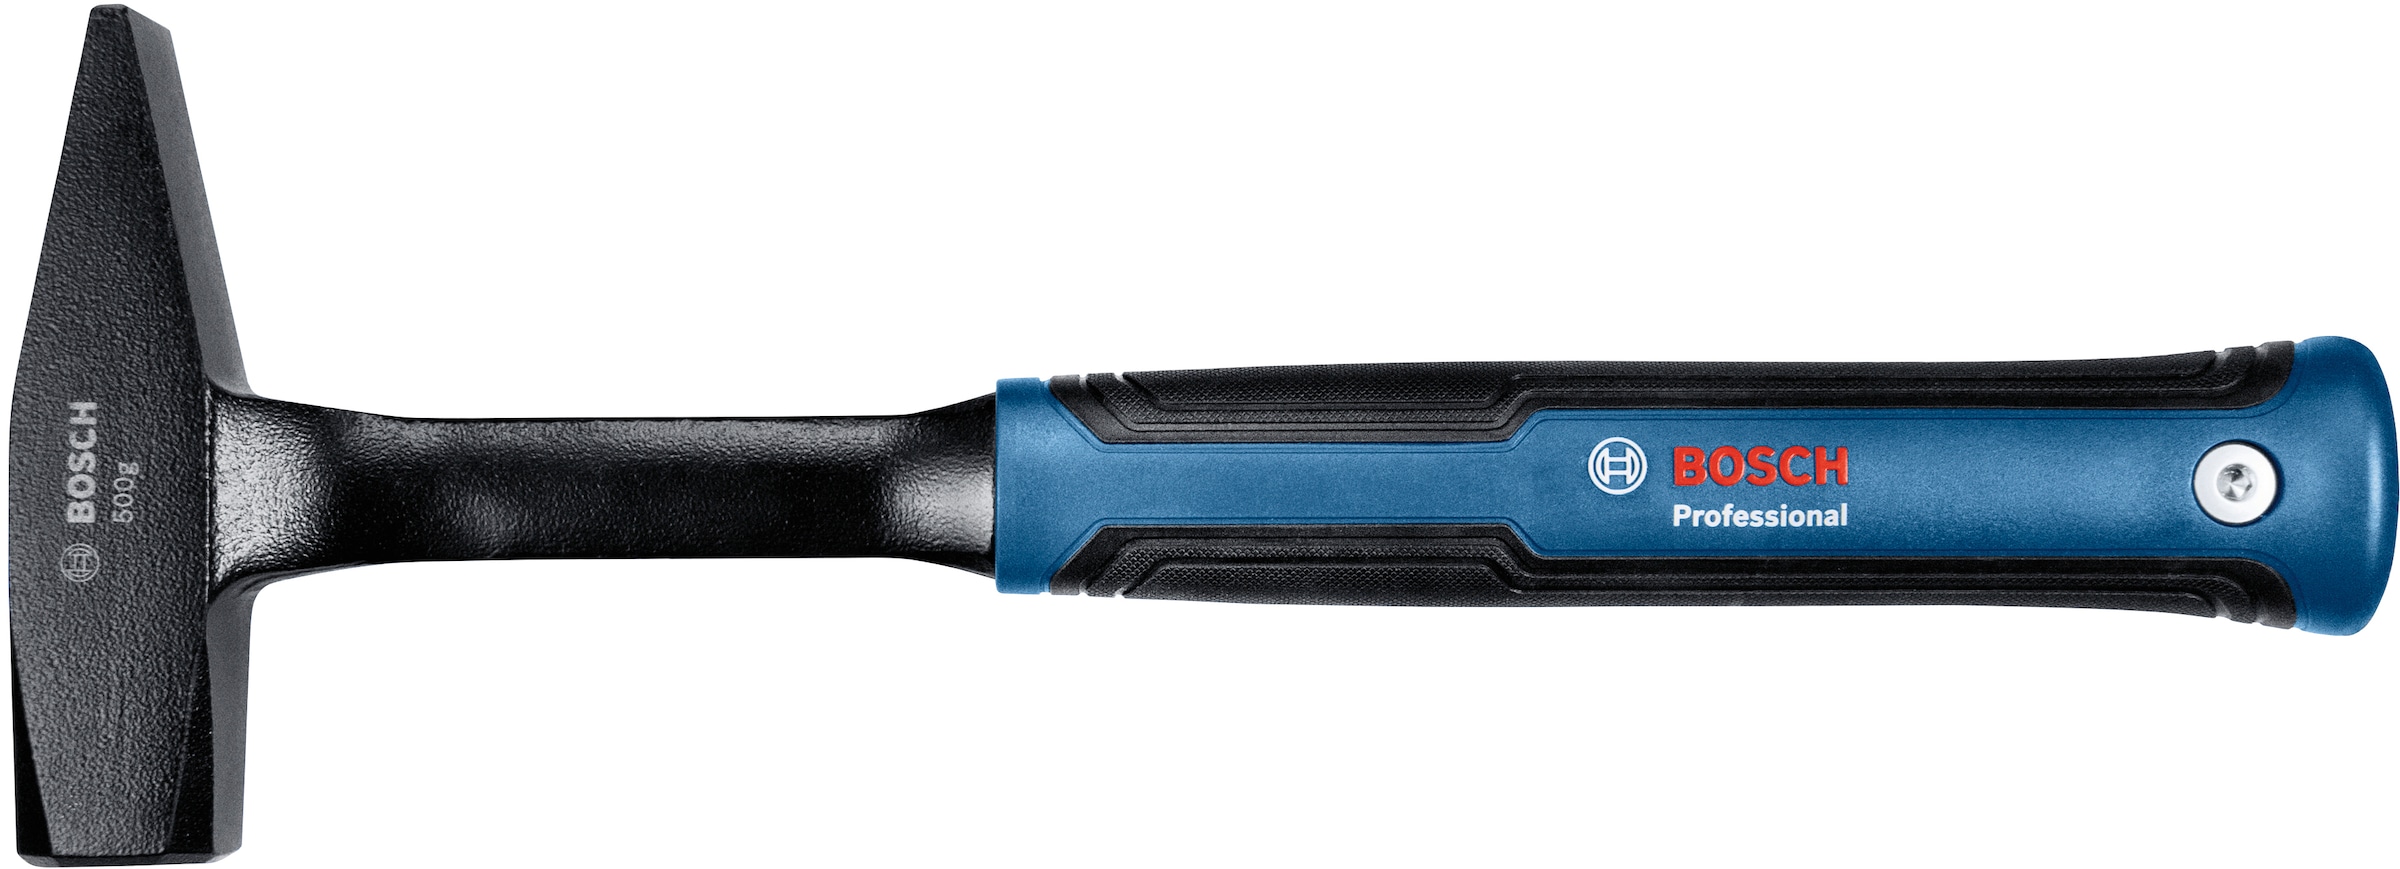 Bosch Professional Hammer »(1600A016LL)«, 500 g online bei OTTO